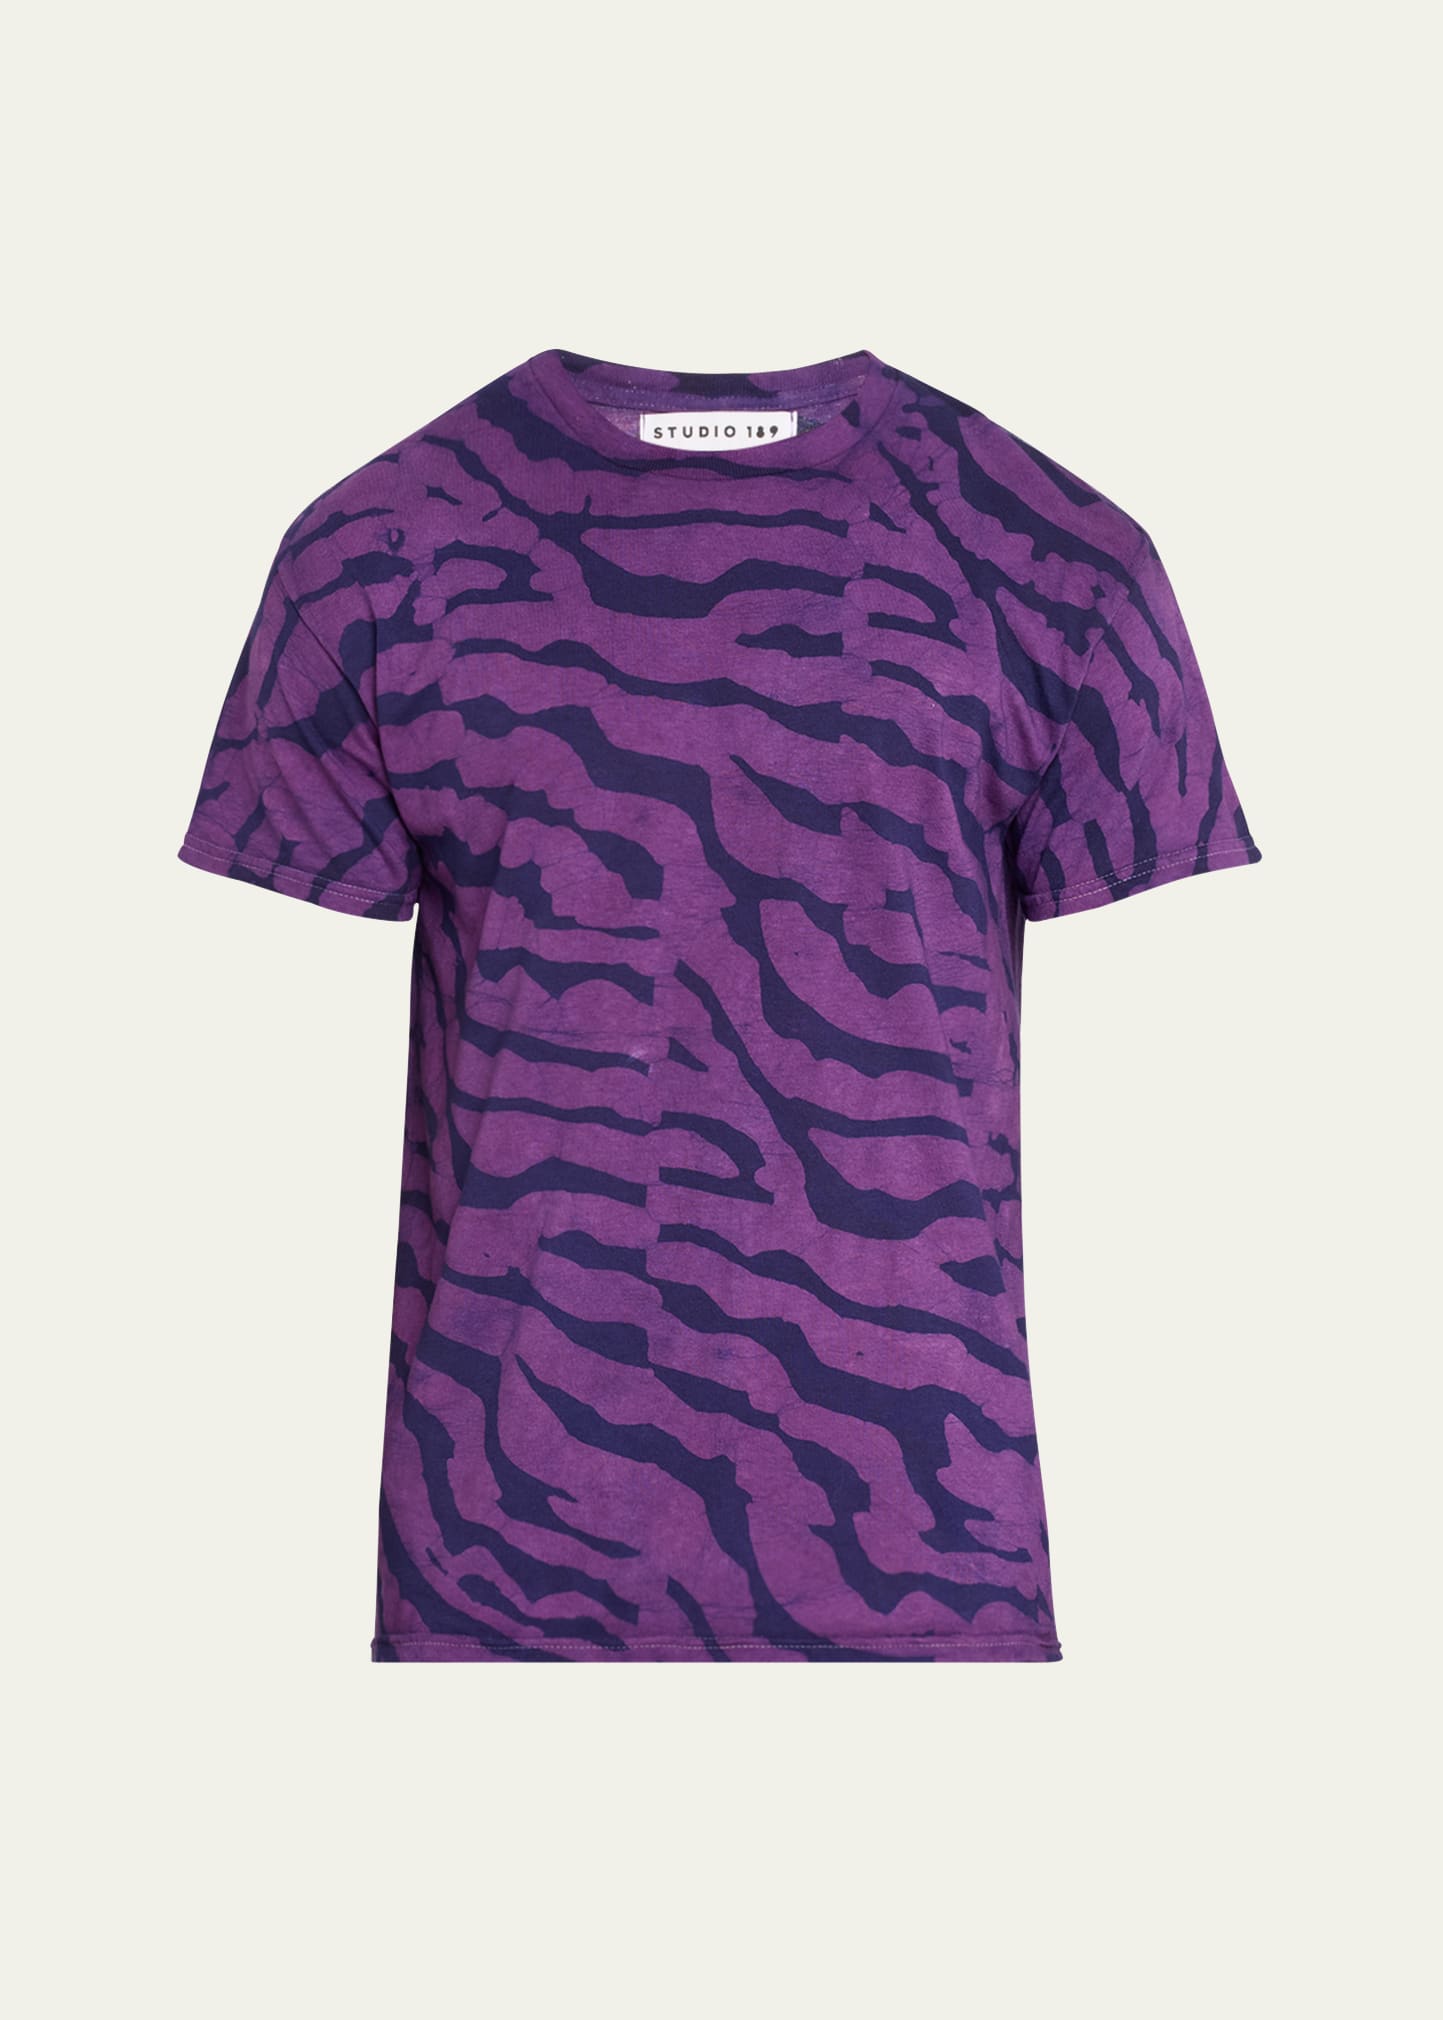 Men's Zebra Hand-Batik T-Shirt